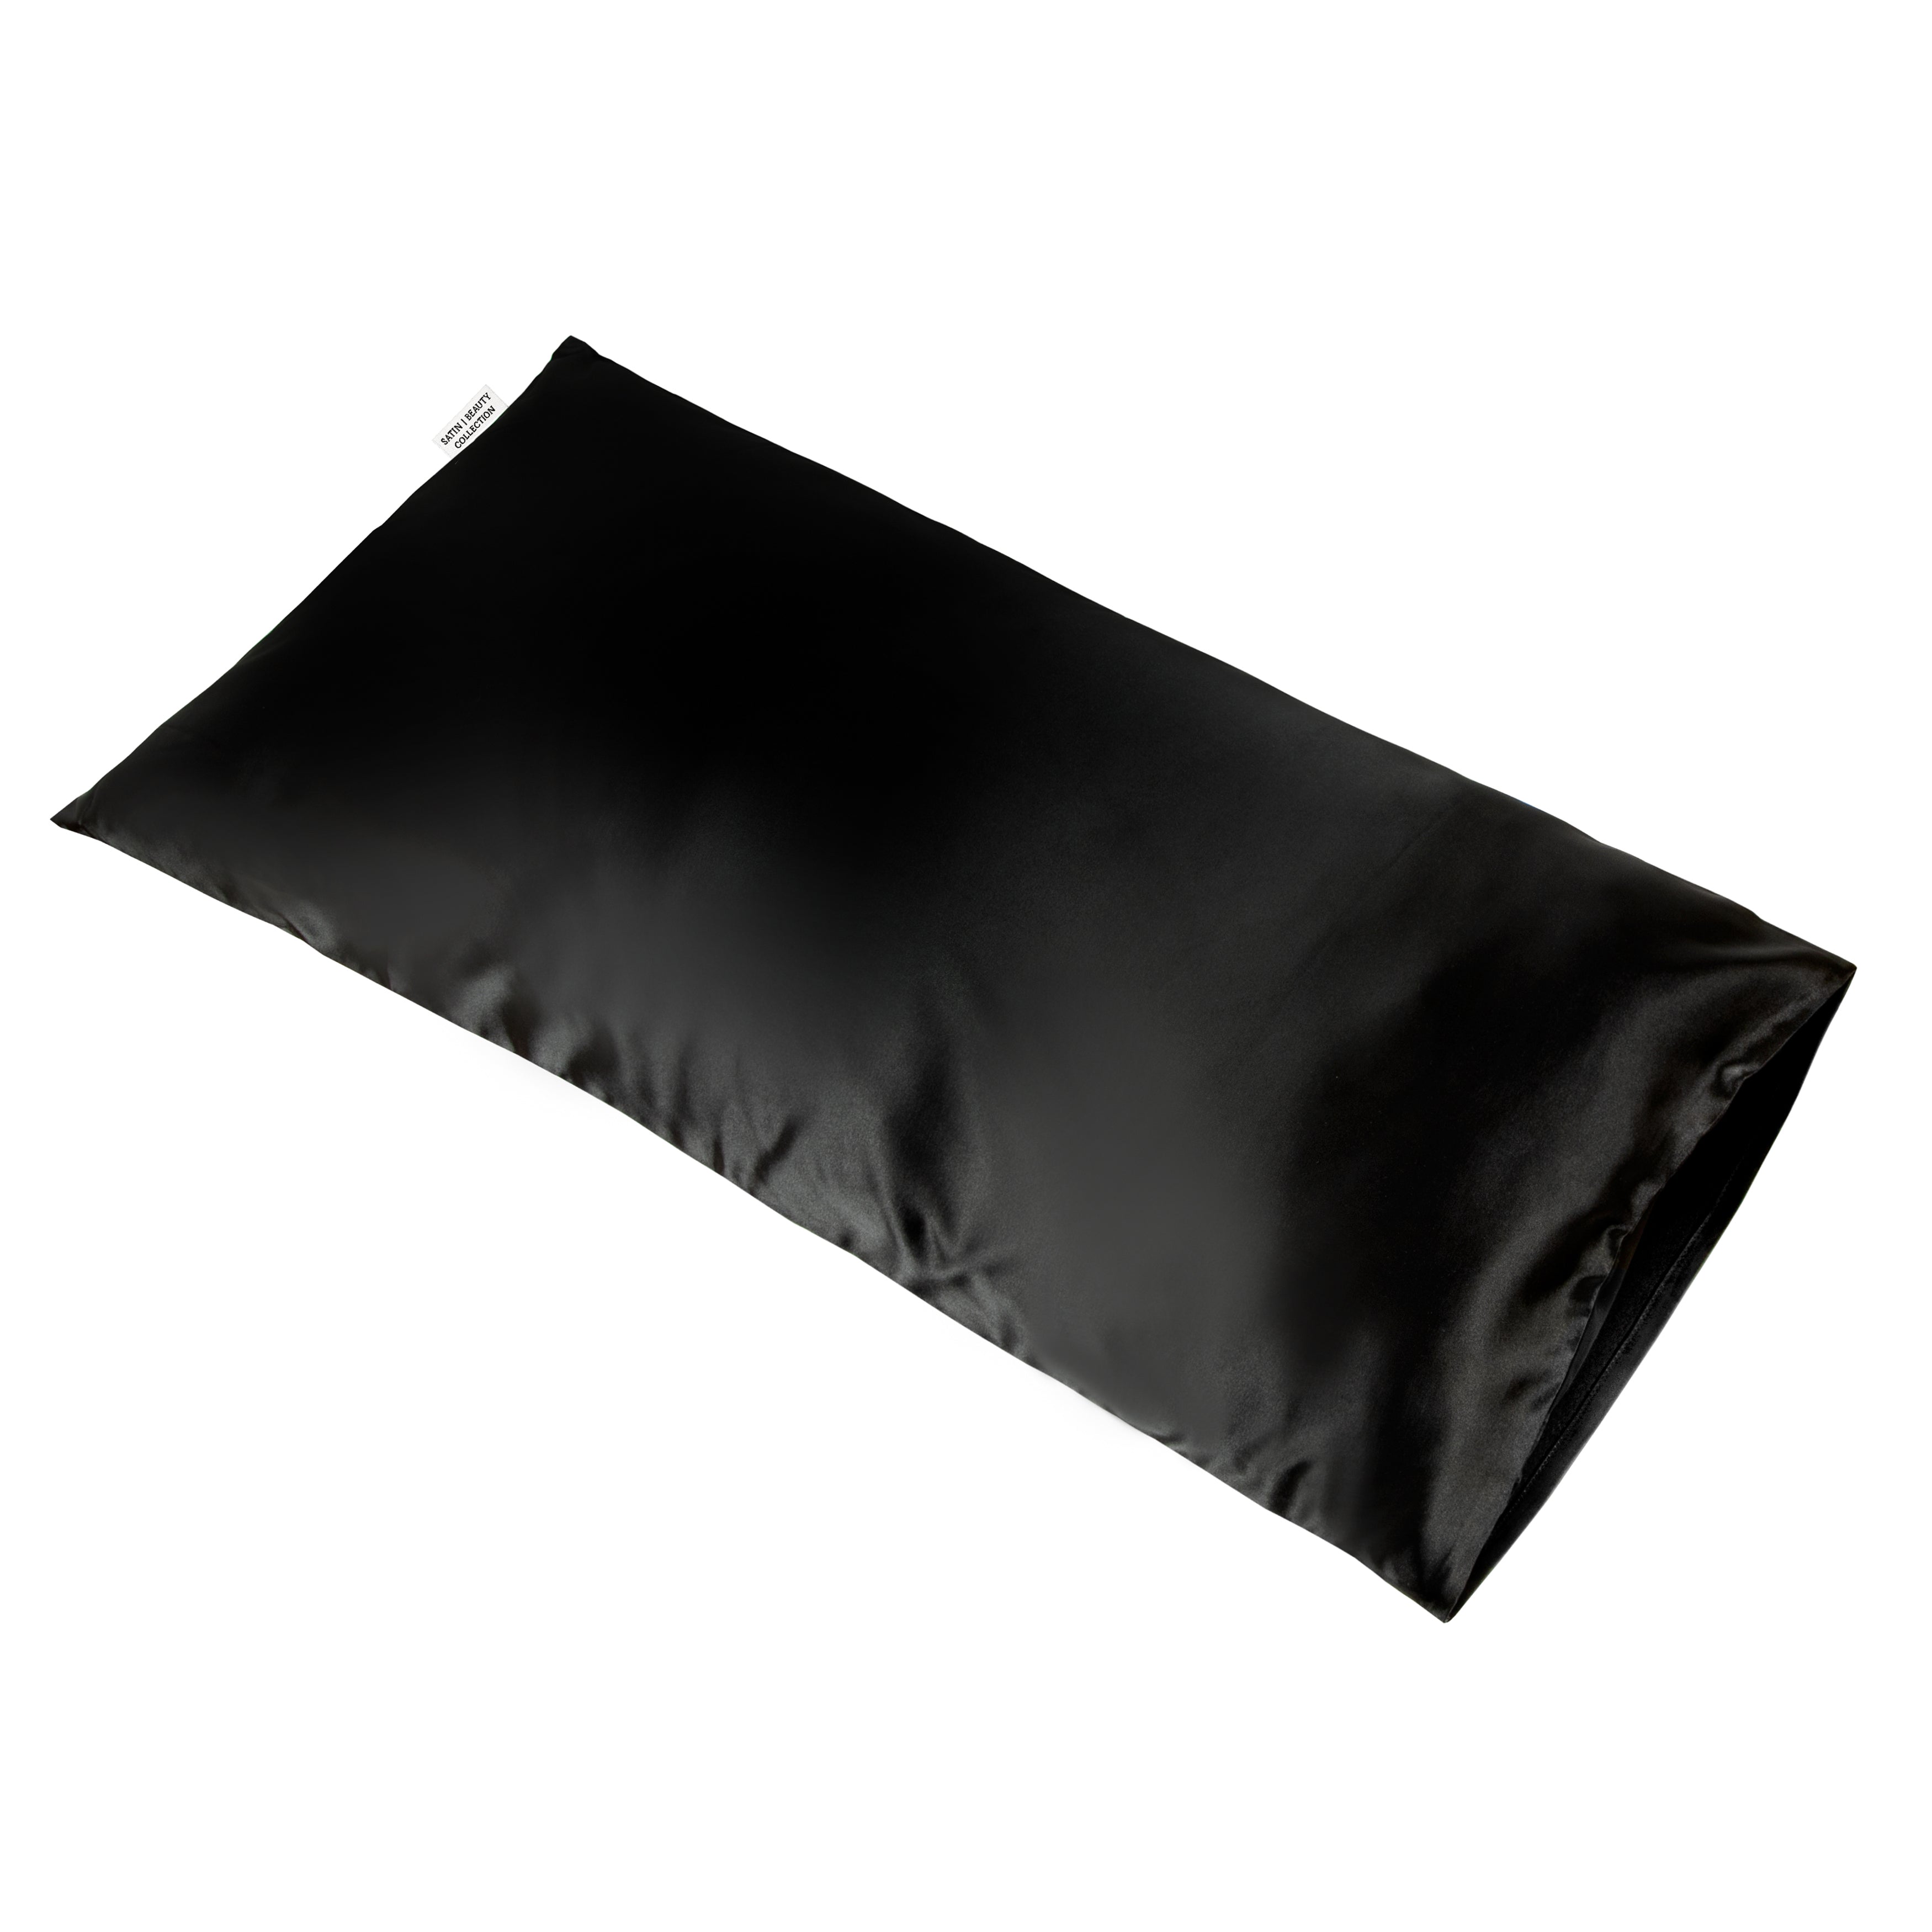 Satin Pillow - Noir (40x80)